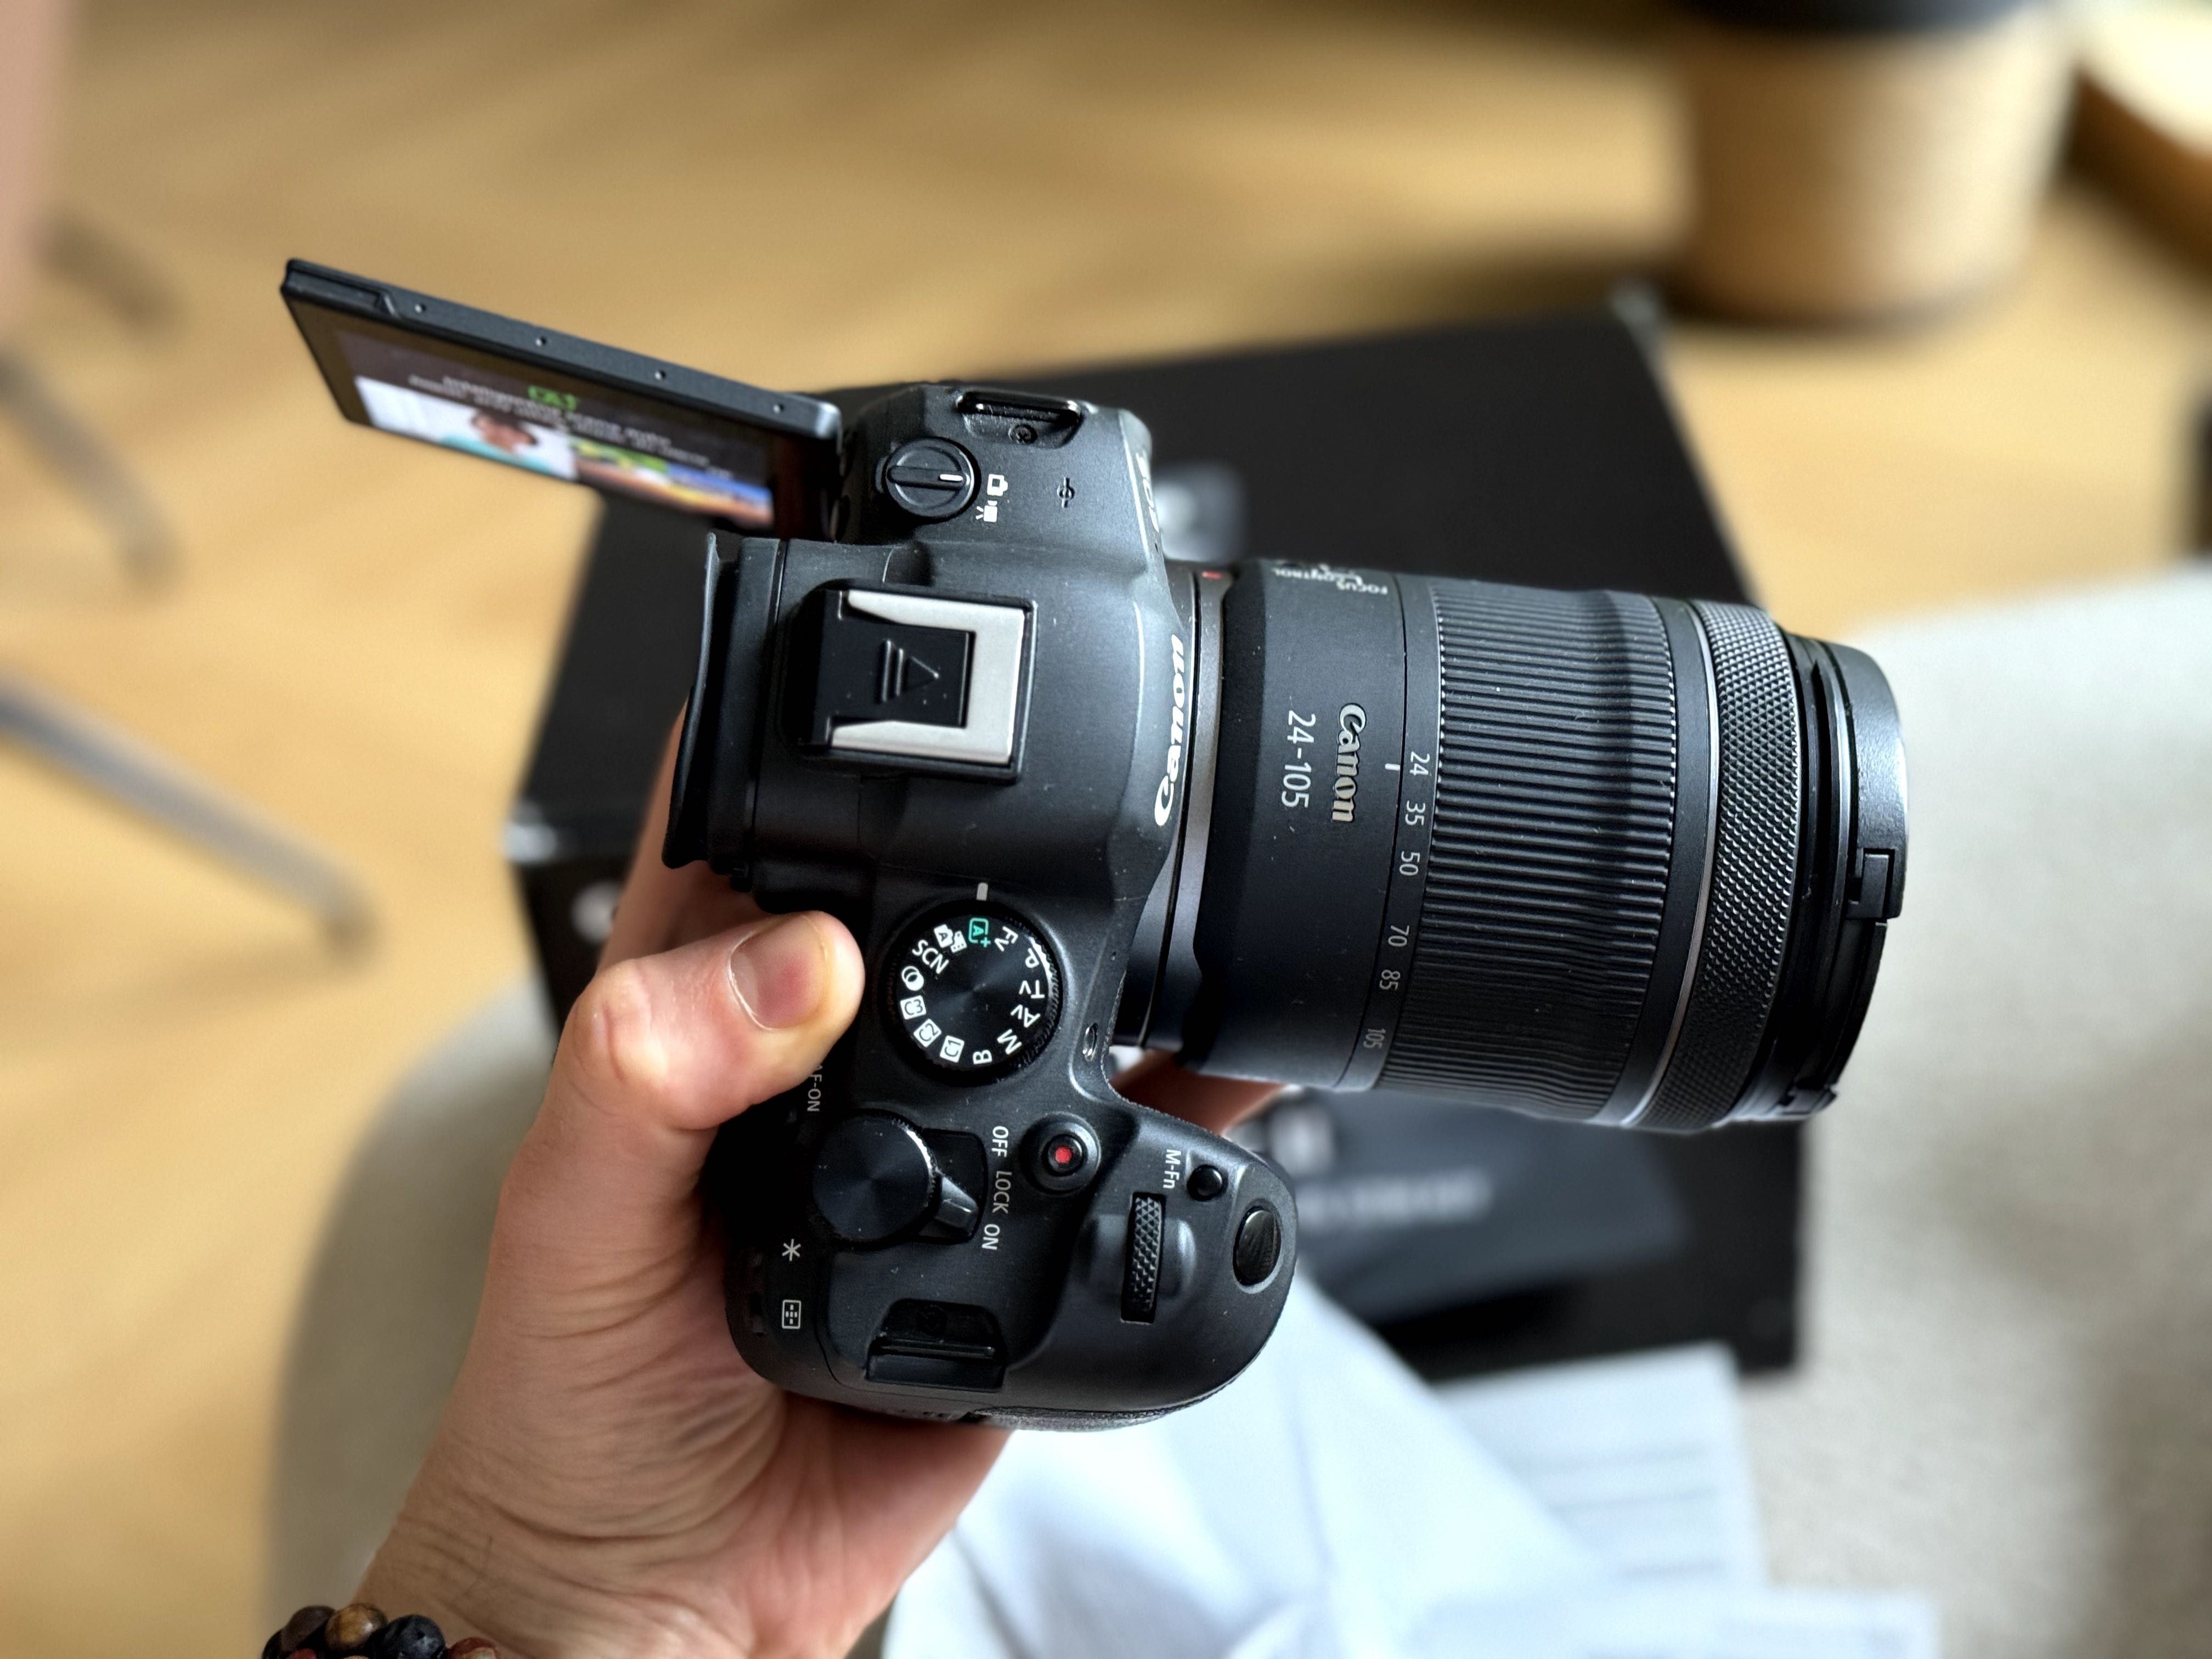 Idealny Canon EOS R6 mark II 2 + obiektyw 24-105 komplet